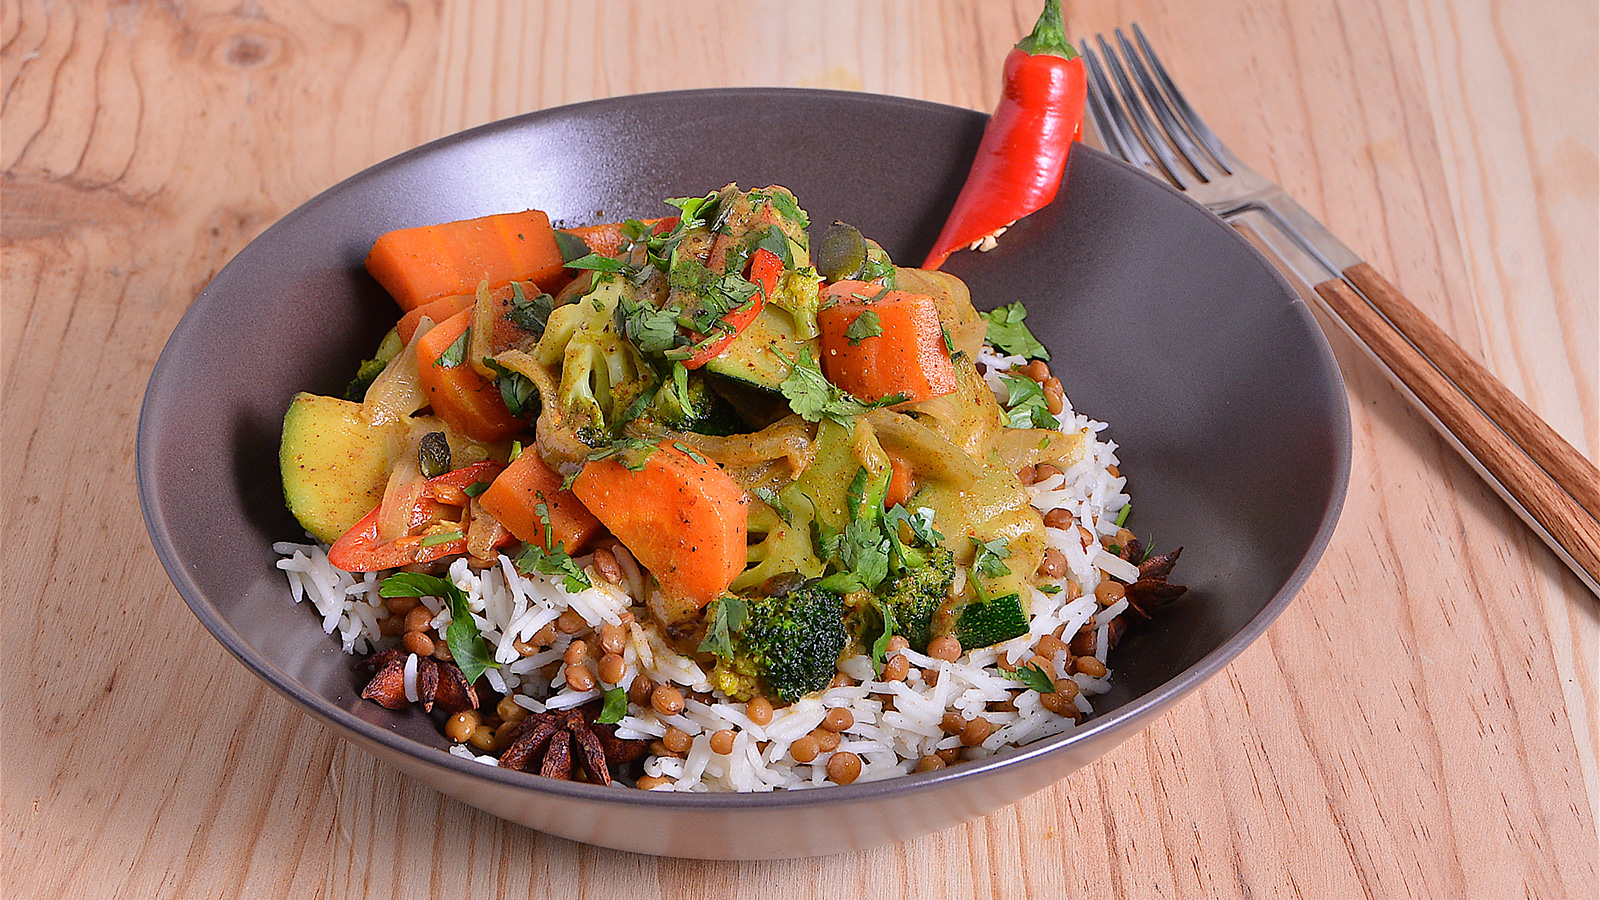 Curry de verduras con arroz basmati salteado con lentejas y anís estrellado  - Nicola Poltronieri - Receta - Canal Cocina